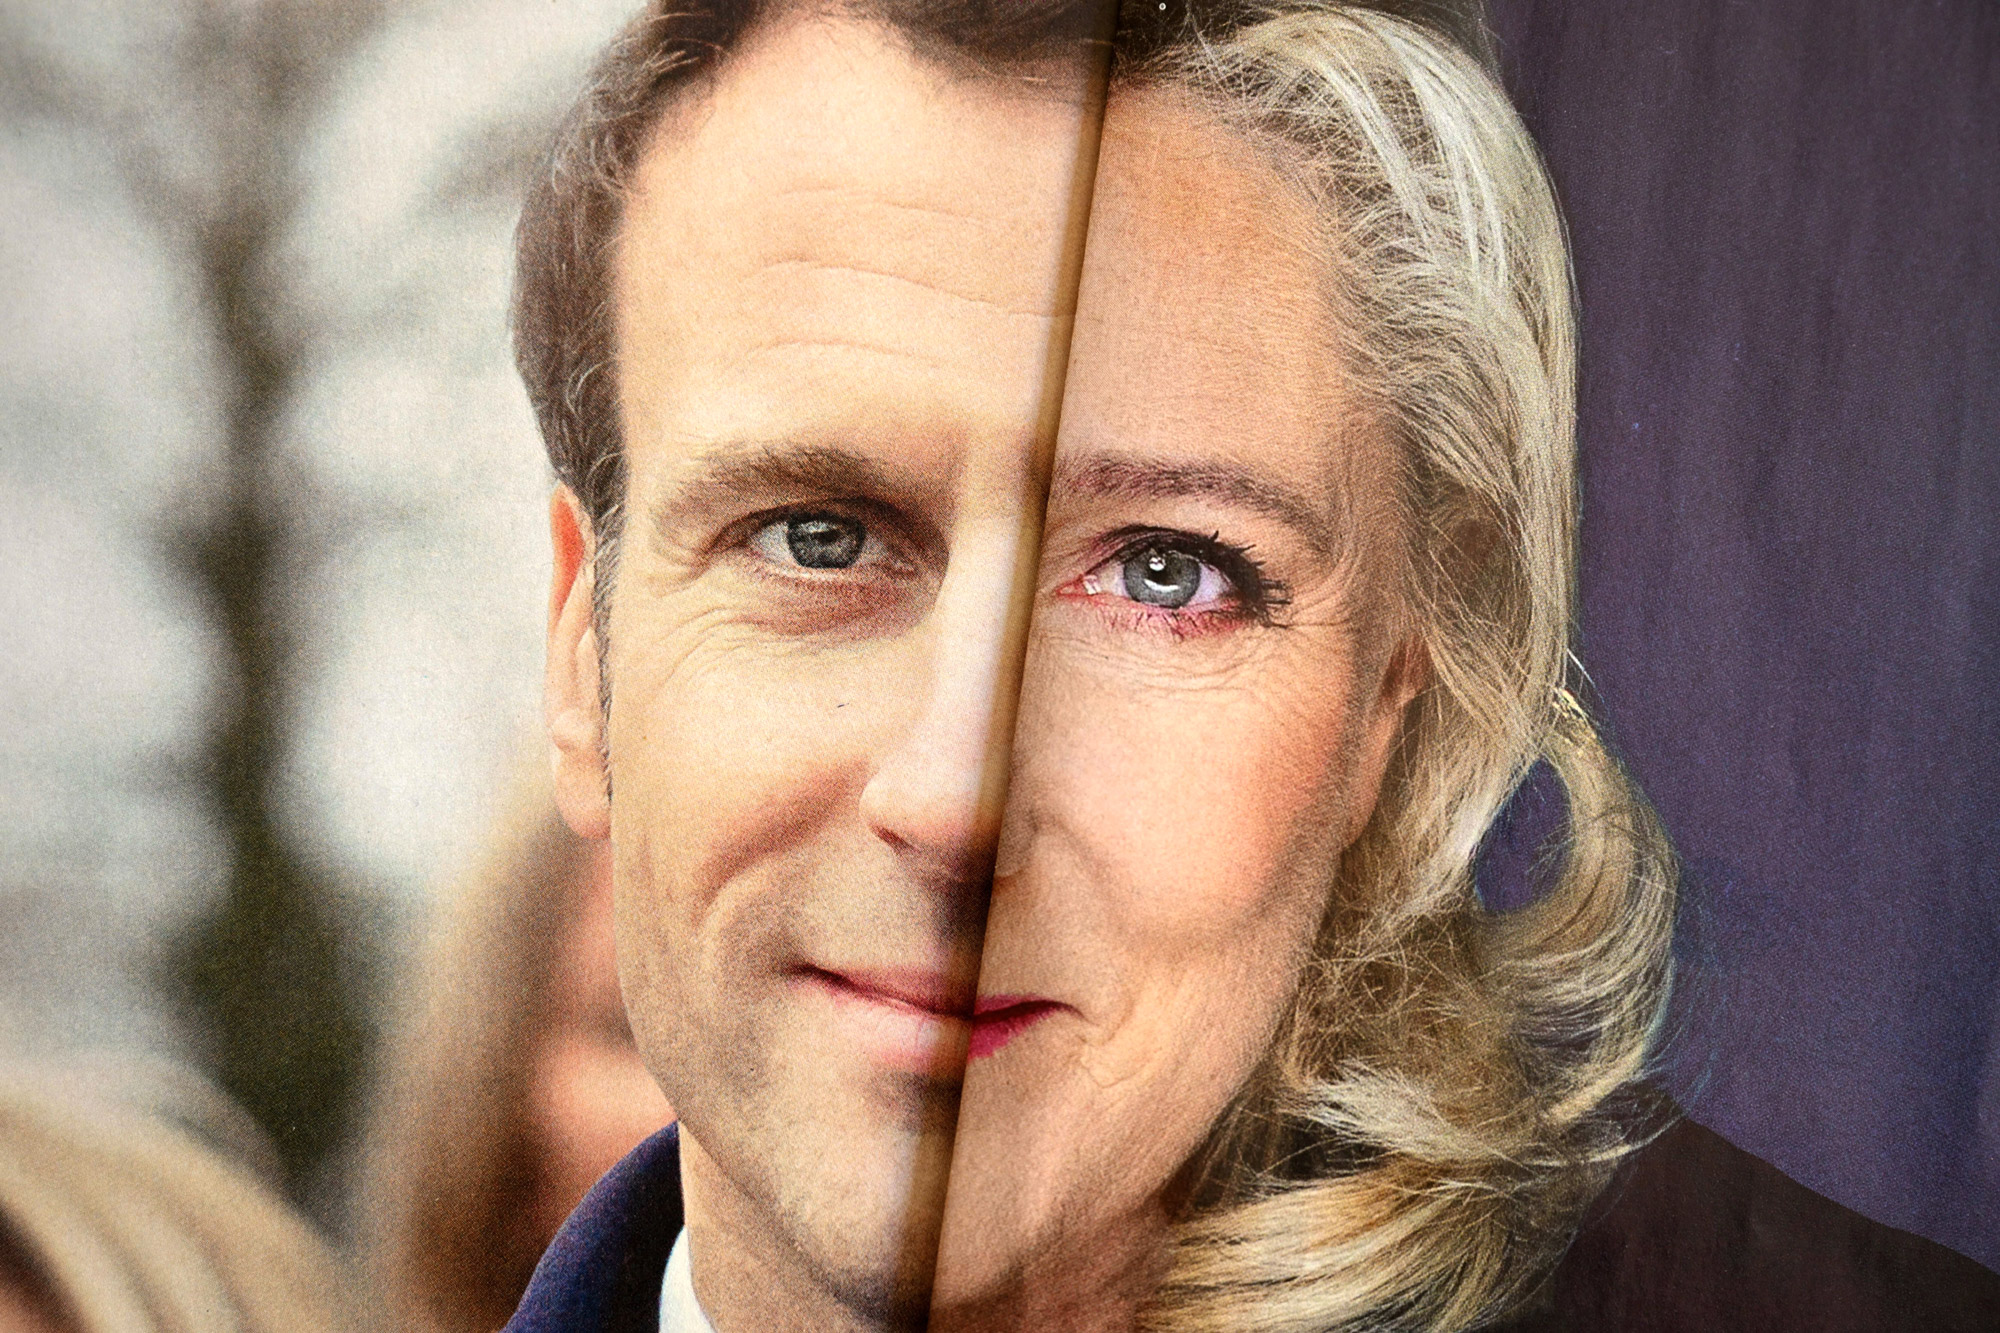 Live οι γαλλικές εκλογές στην ΕΡΤ — Έκτακτη ενημερωτική εκπομπή